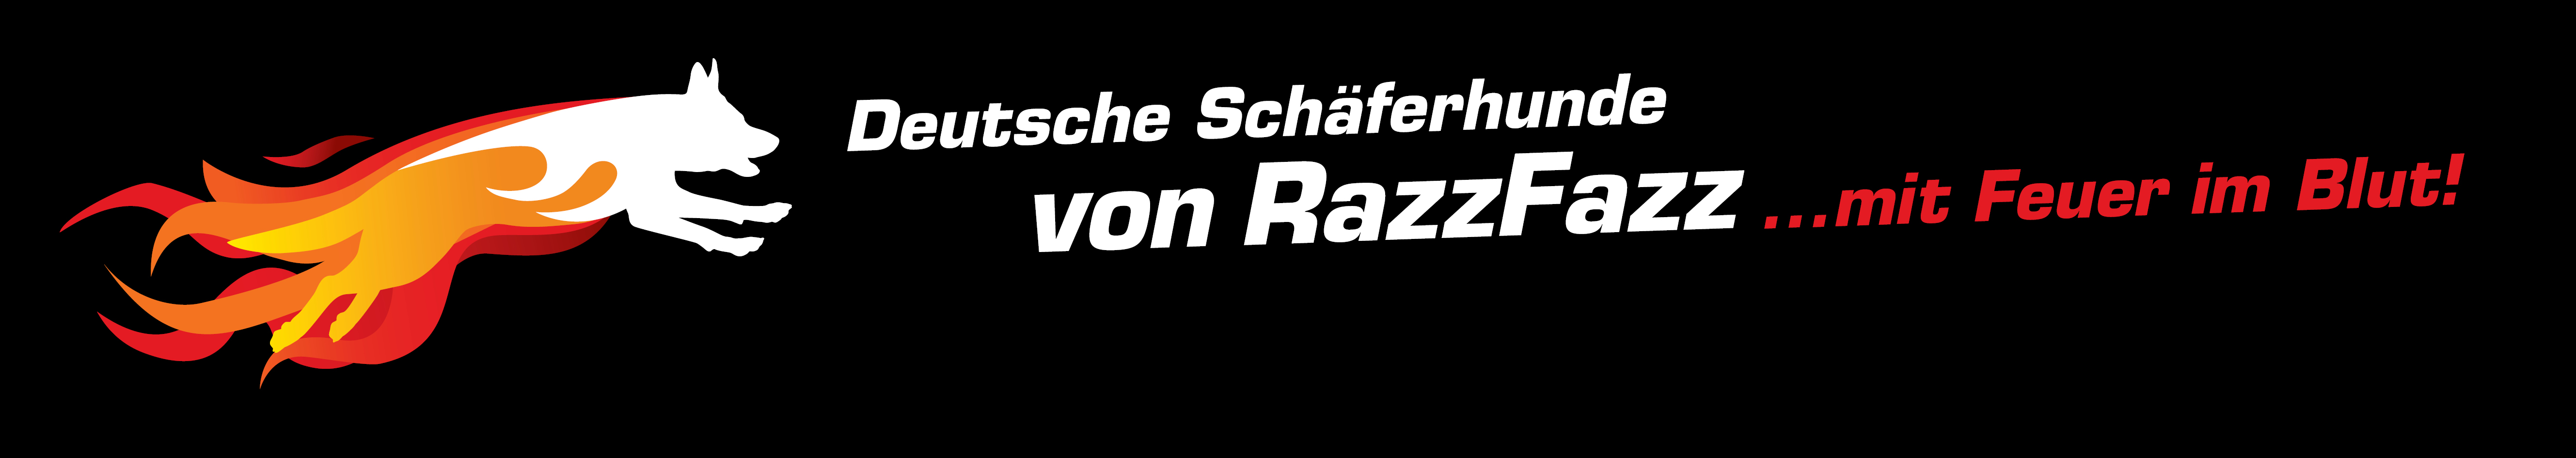 RazzFazz